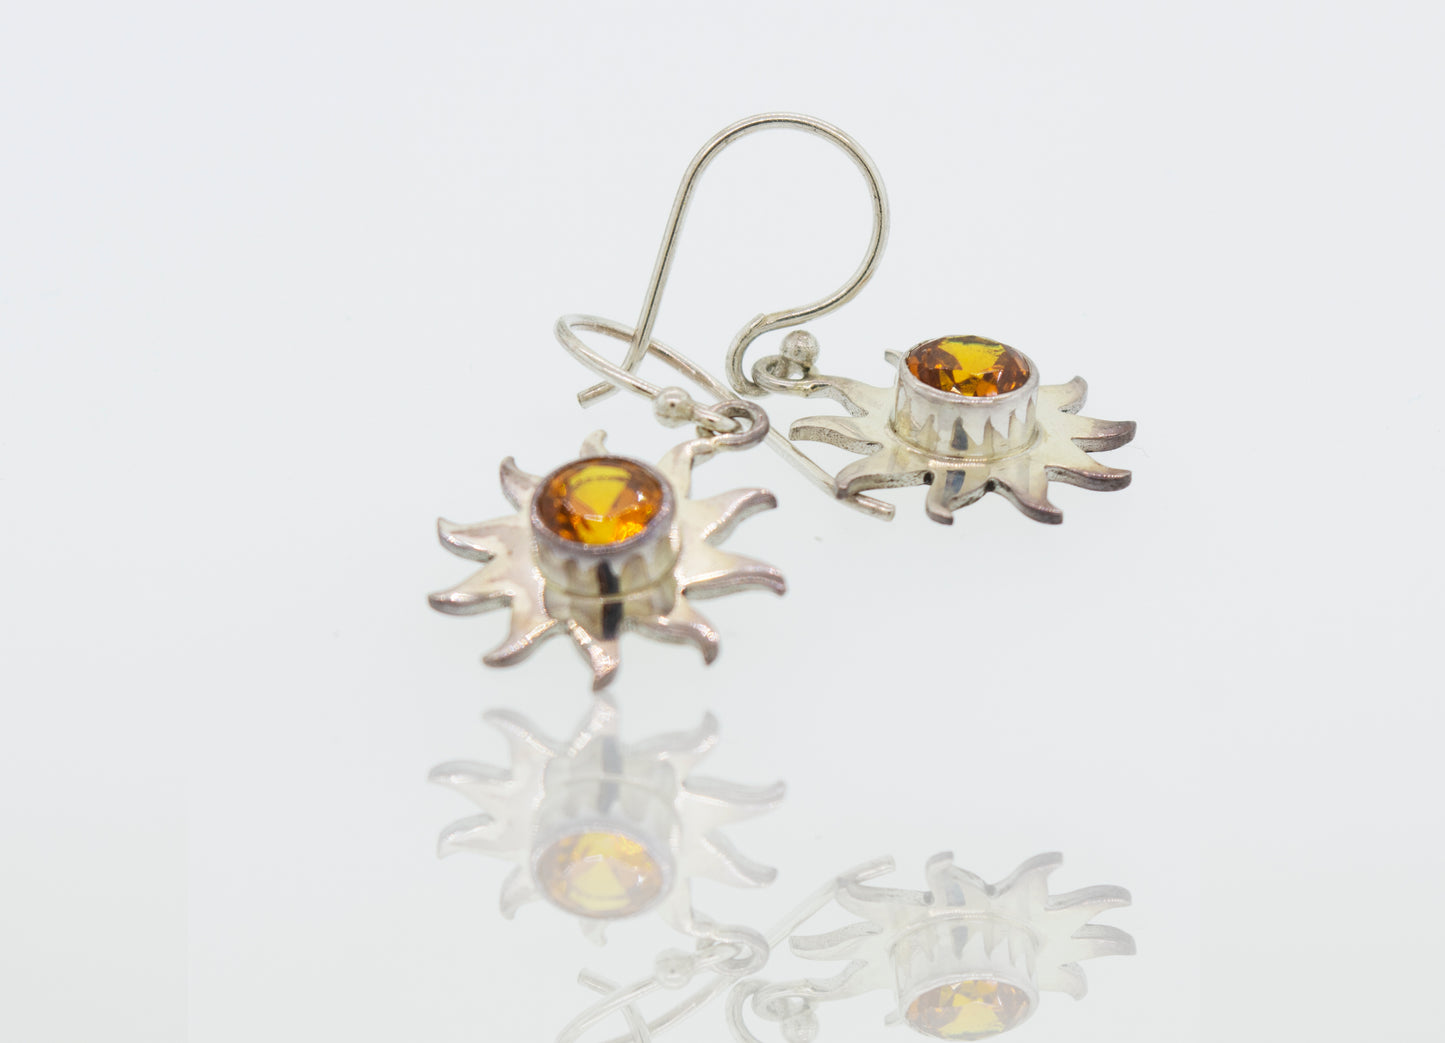 A radiant pair of Super Silver citrine sunburst earrings.